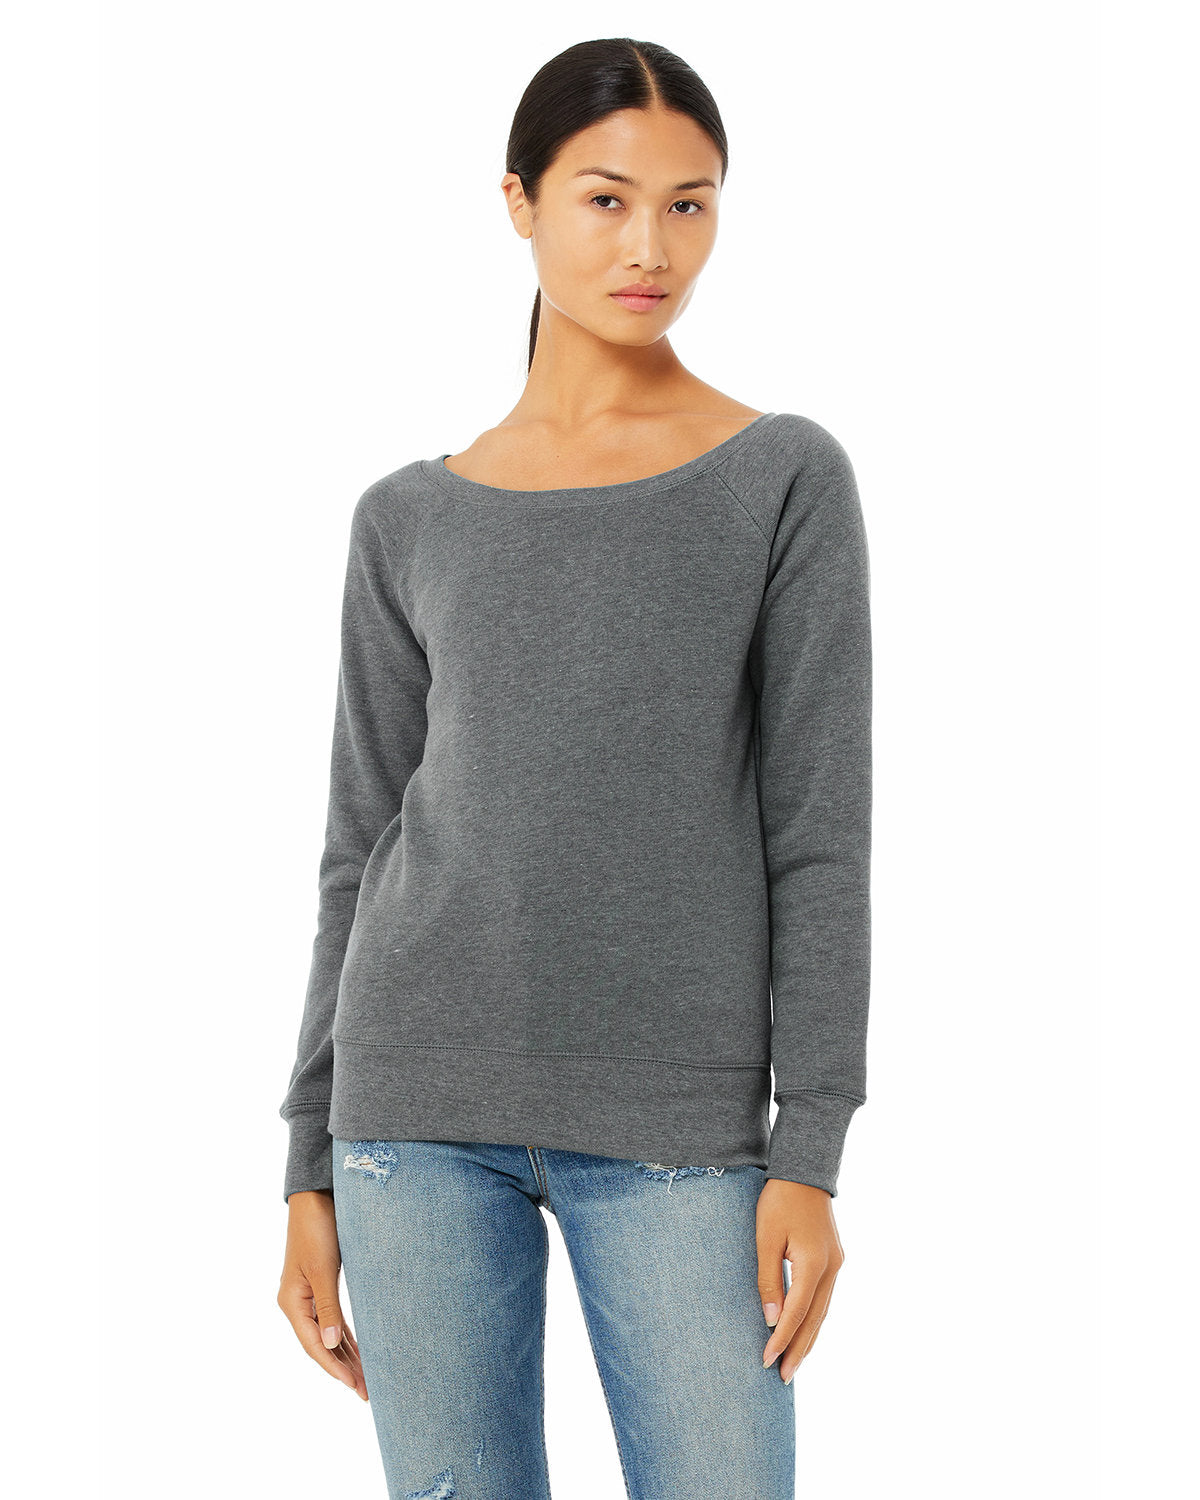 Bella+Canvas 7501 Women's Sponge Fleece Wide Neck Sweatshirt 